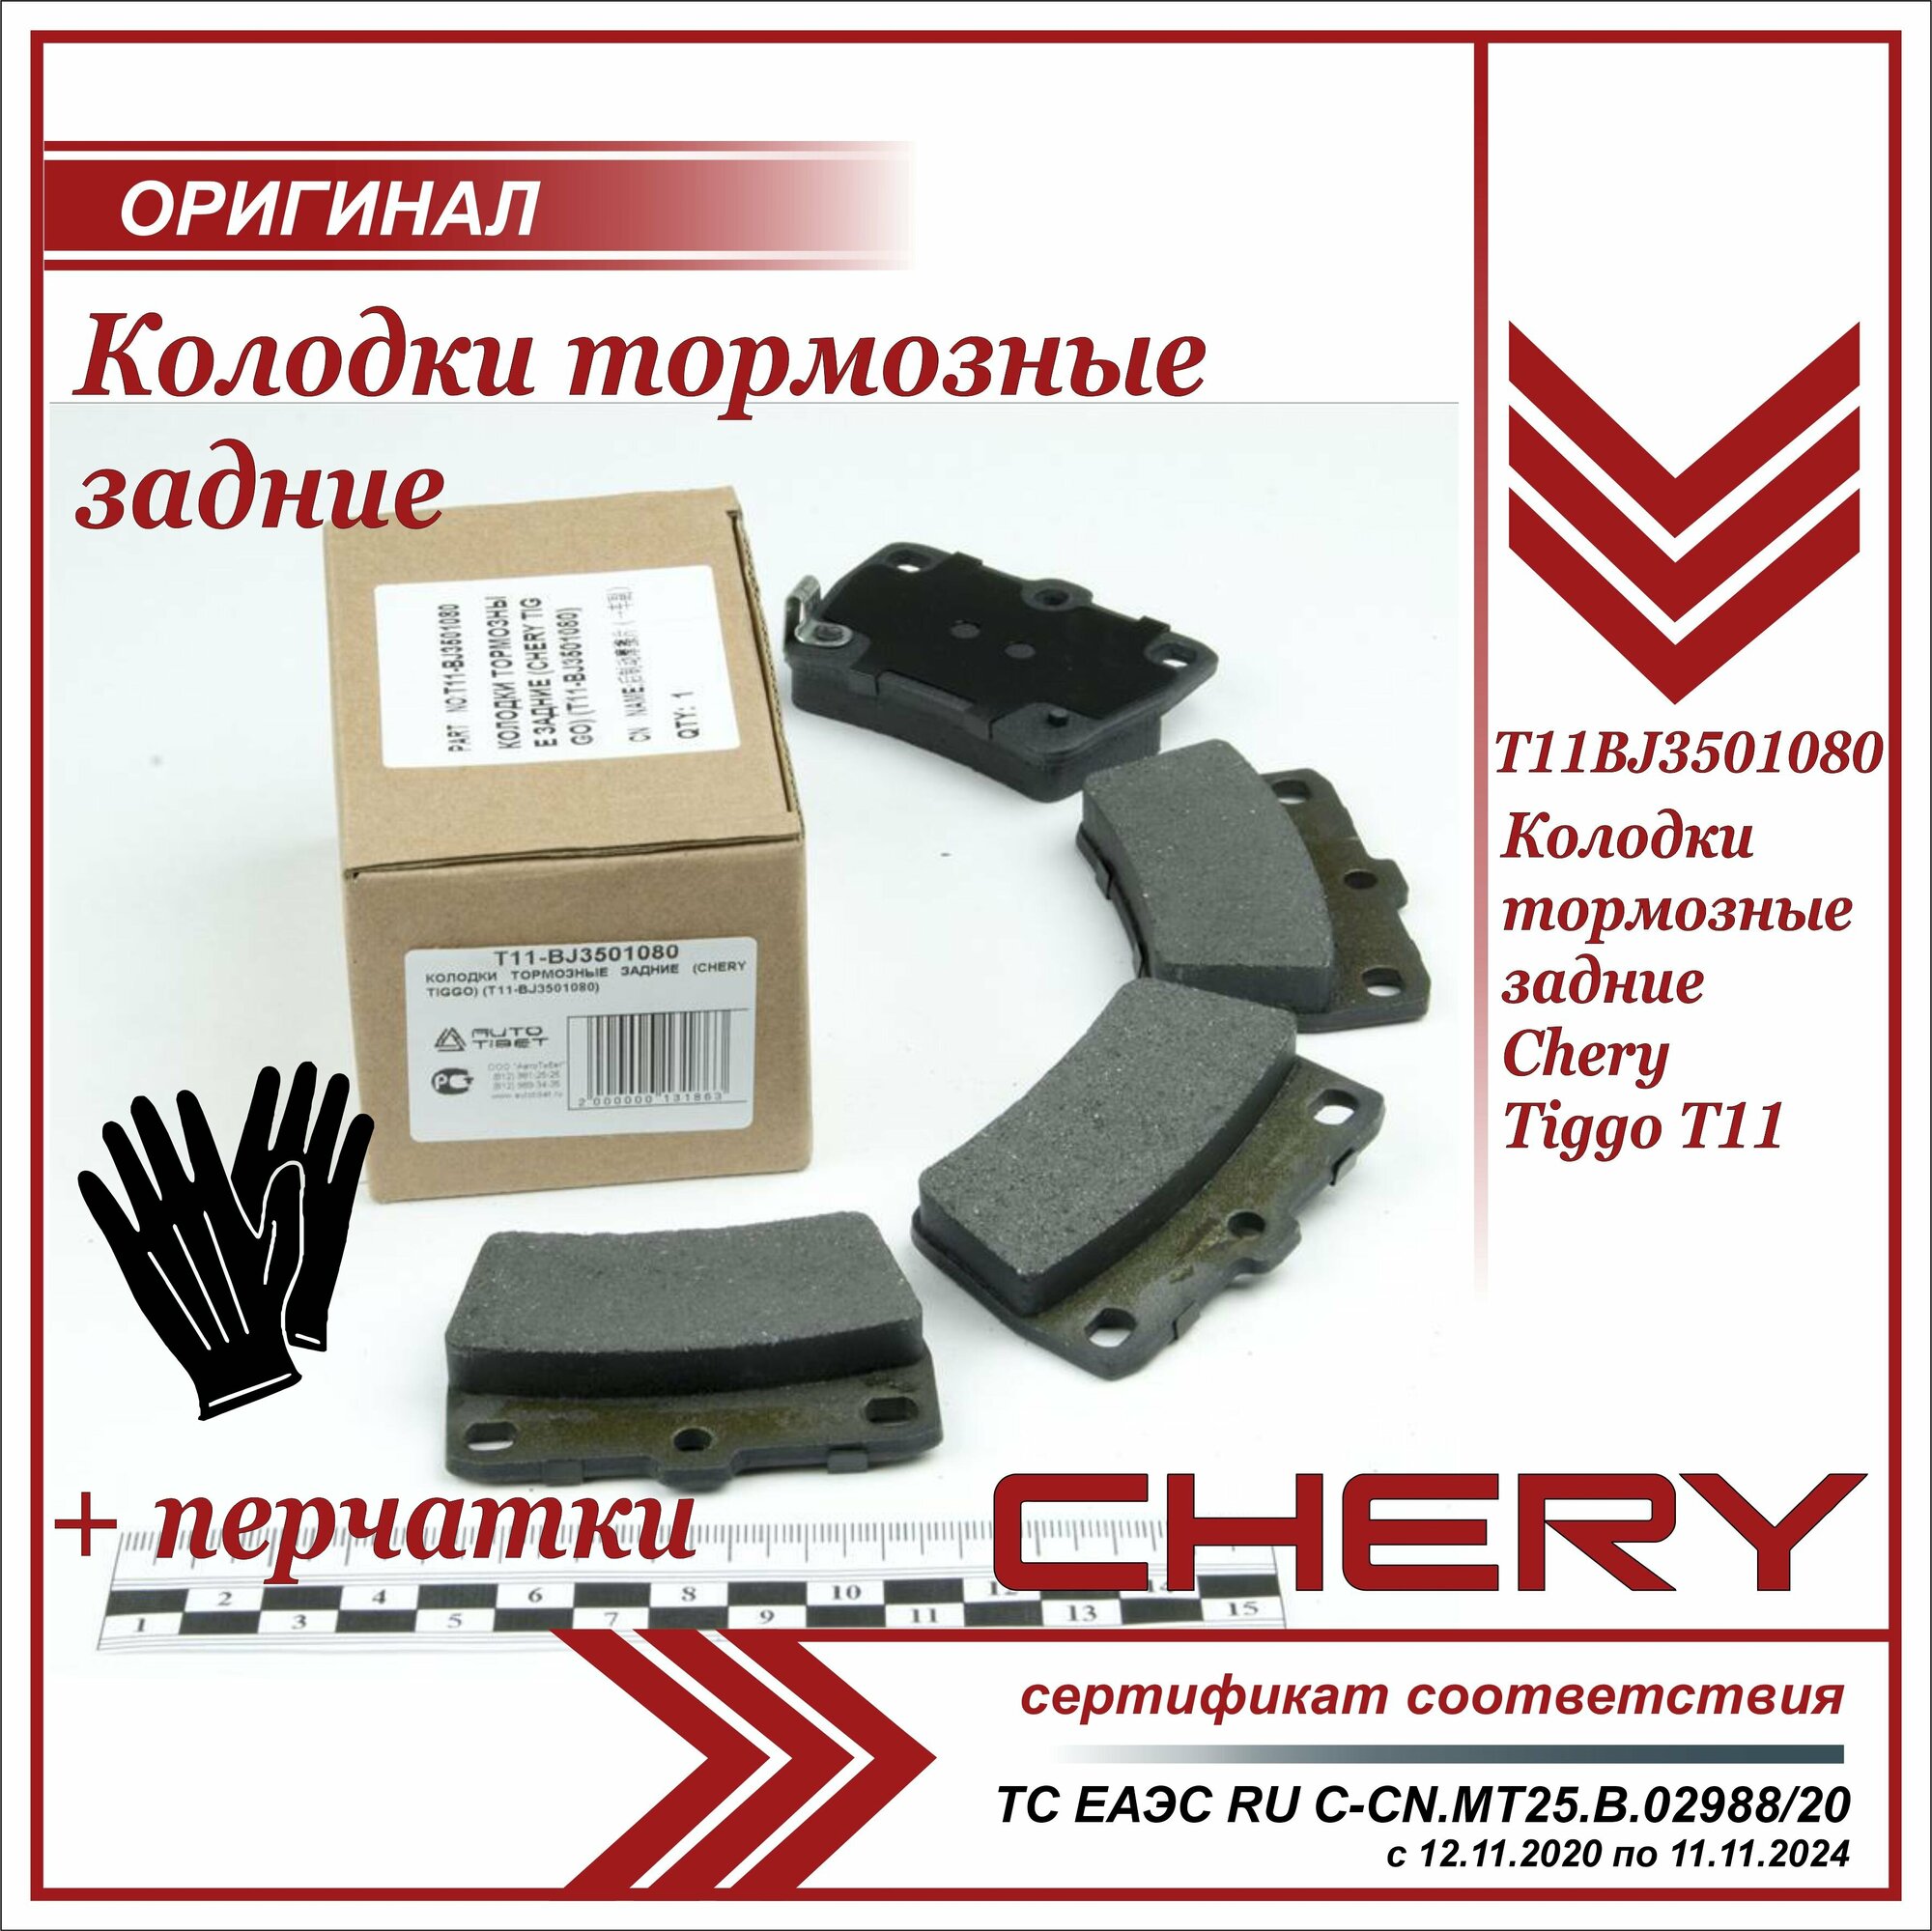 Колодки тормозные задние Чери Тигго Т11, Chery Tiggo T11 комплект 4 штуки, T11BJ3501080, + пара перчаток